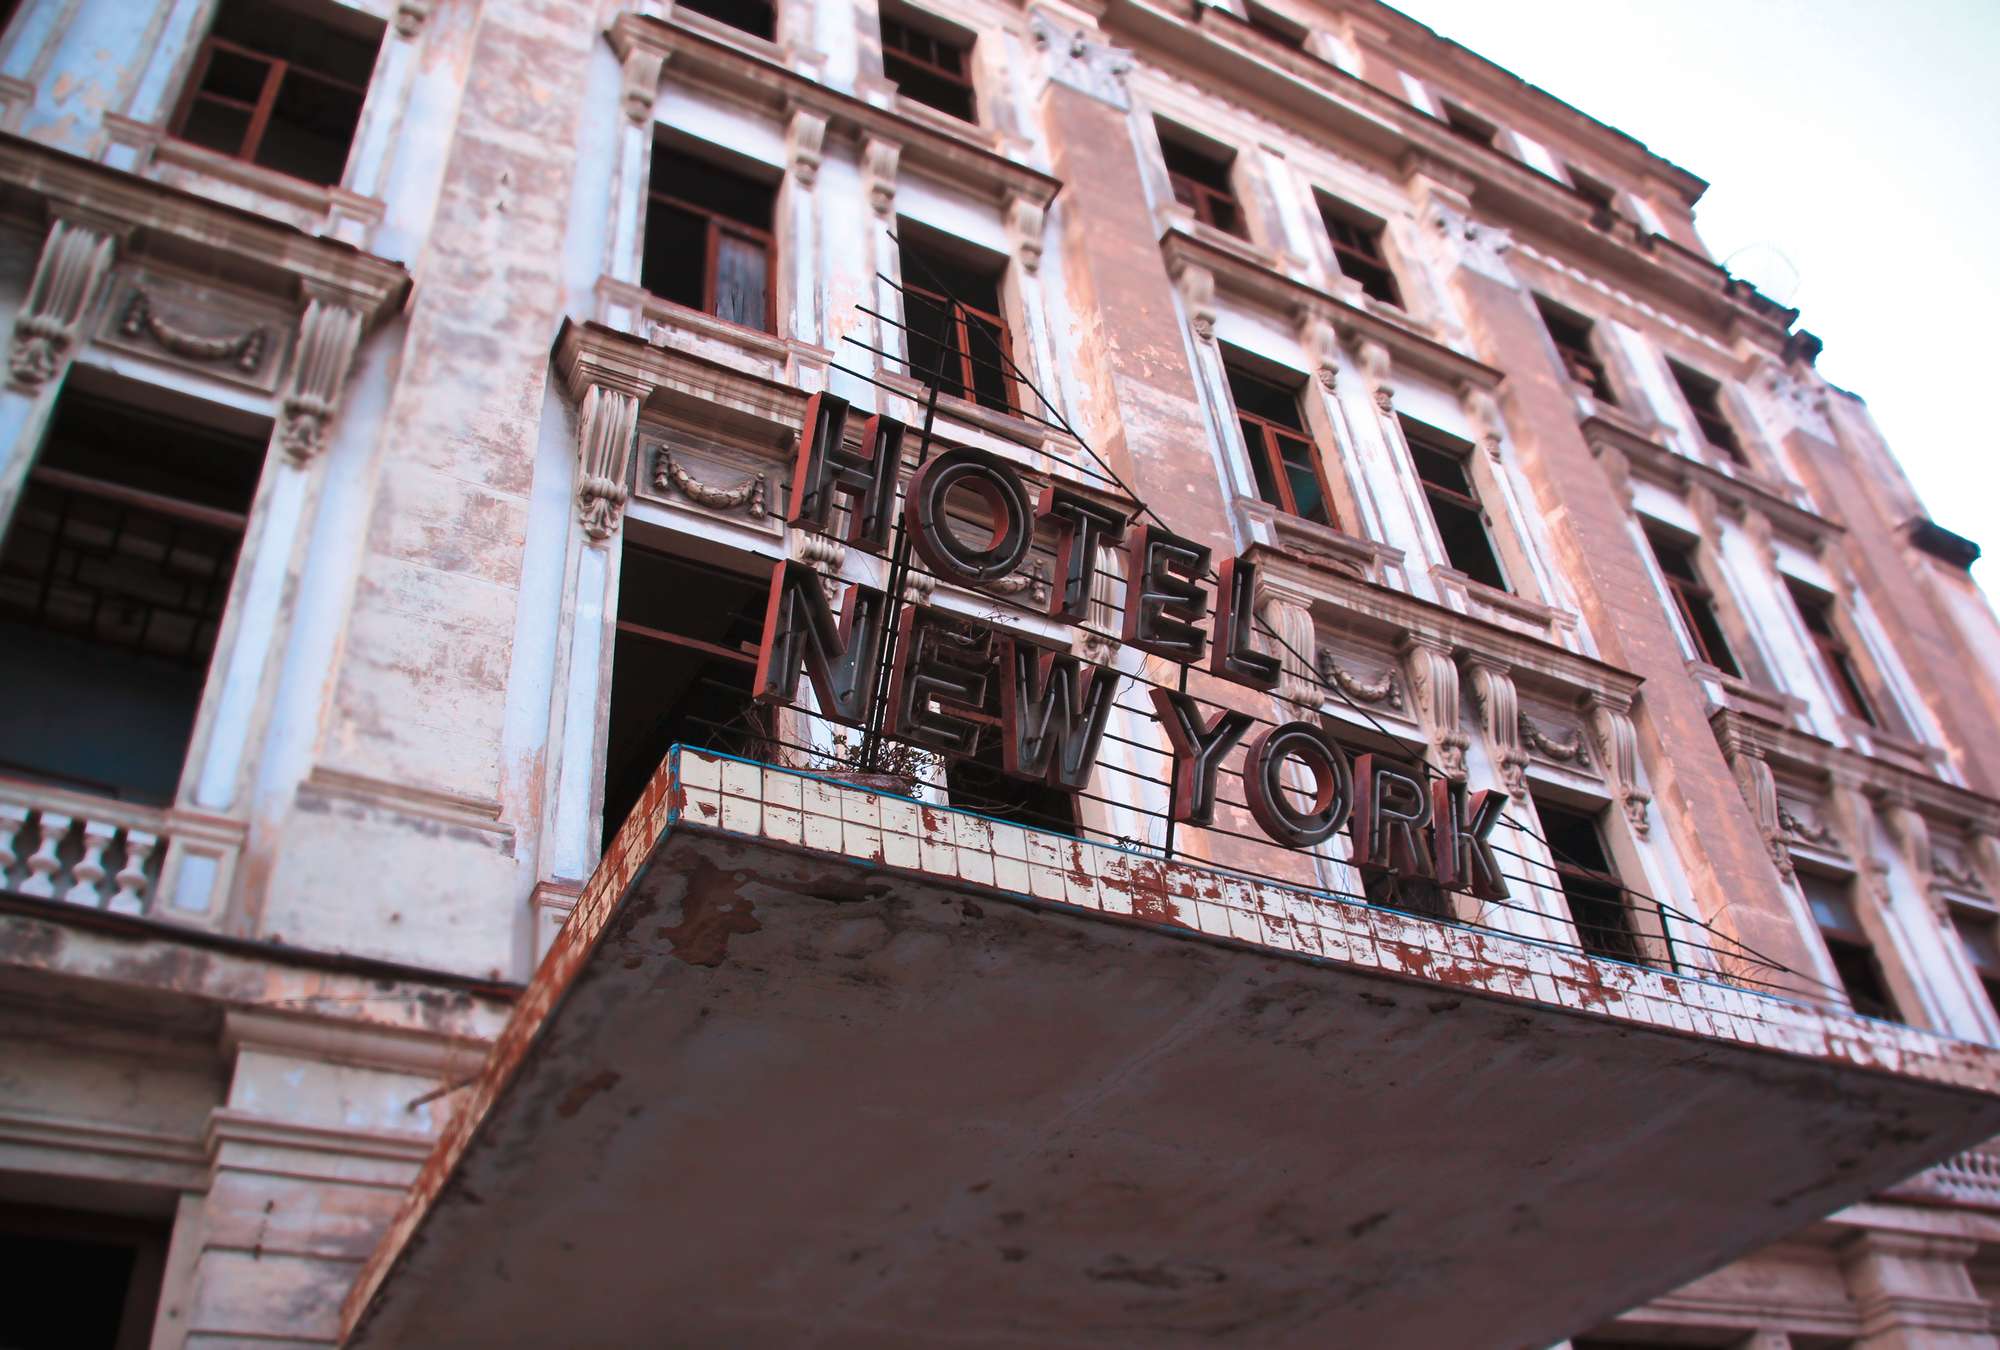             Hotel – Fototapete New York Retro Motiv
        